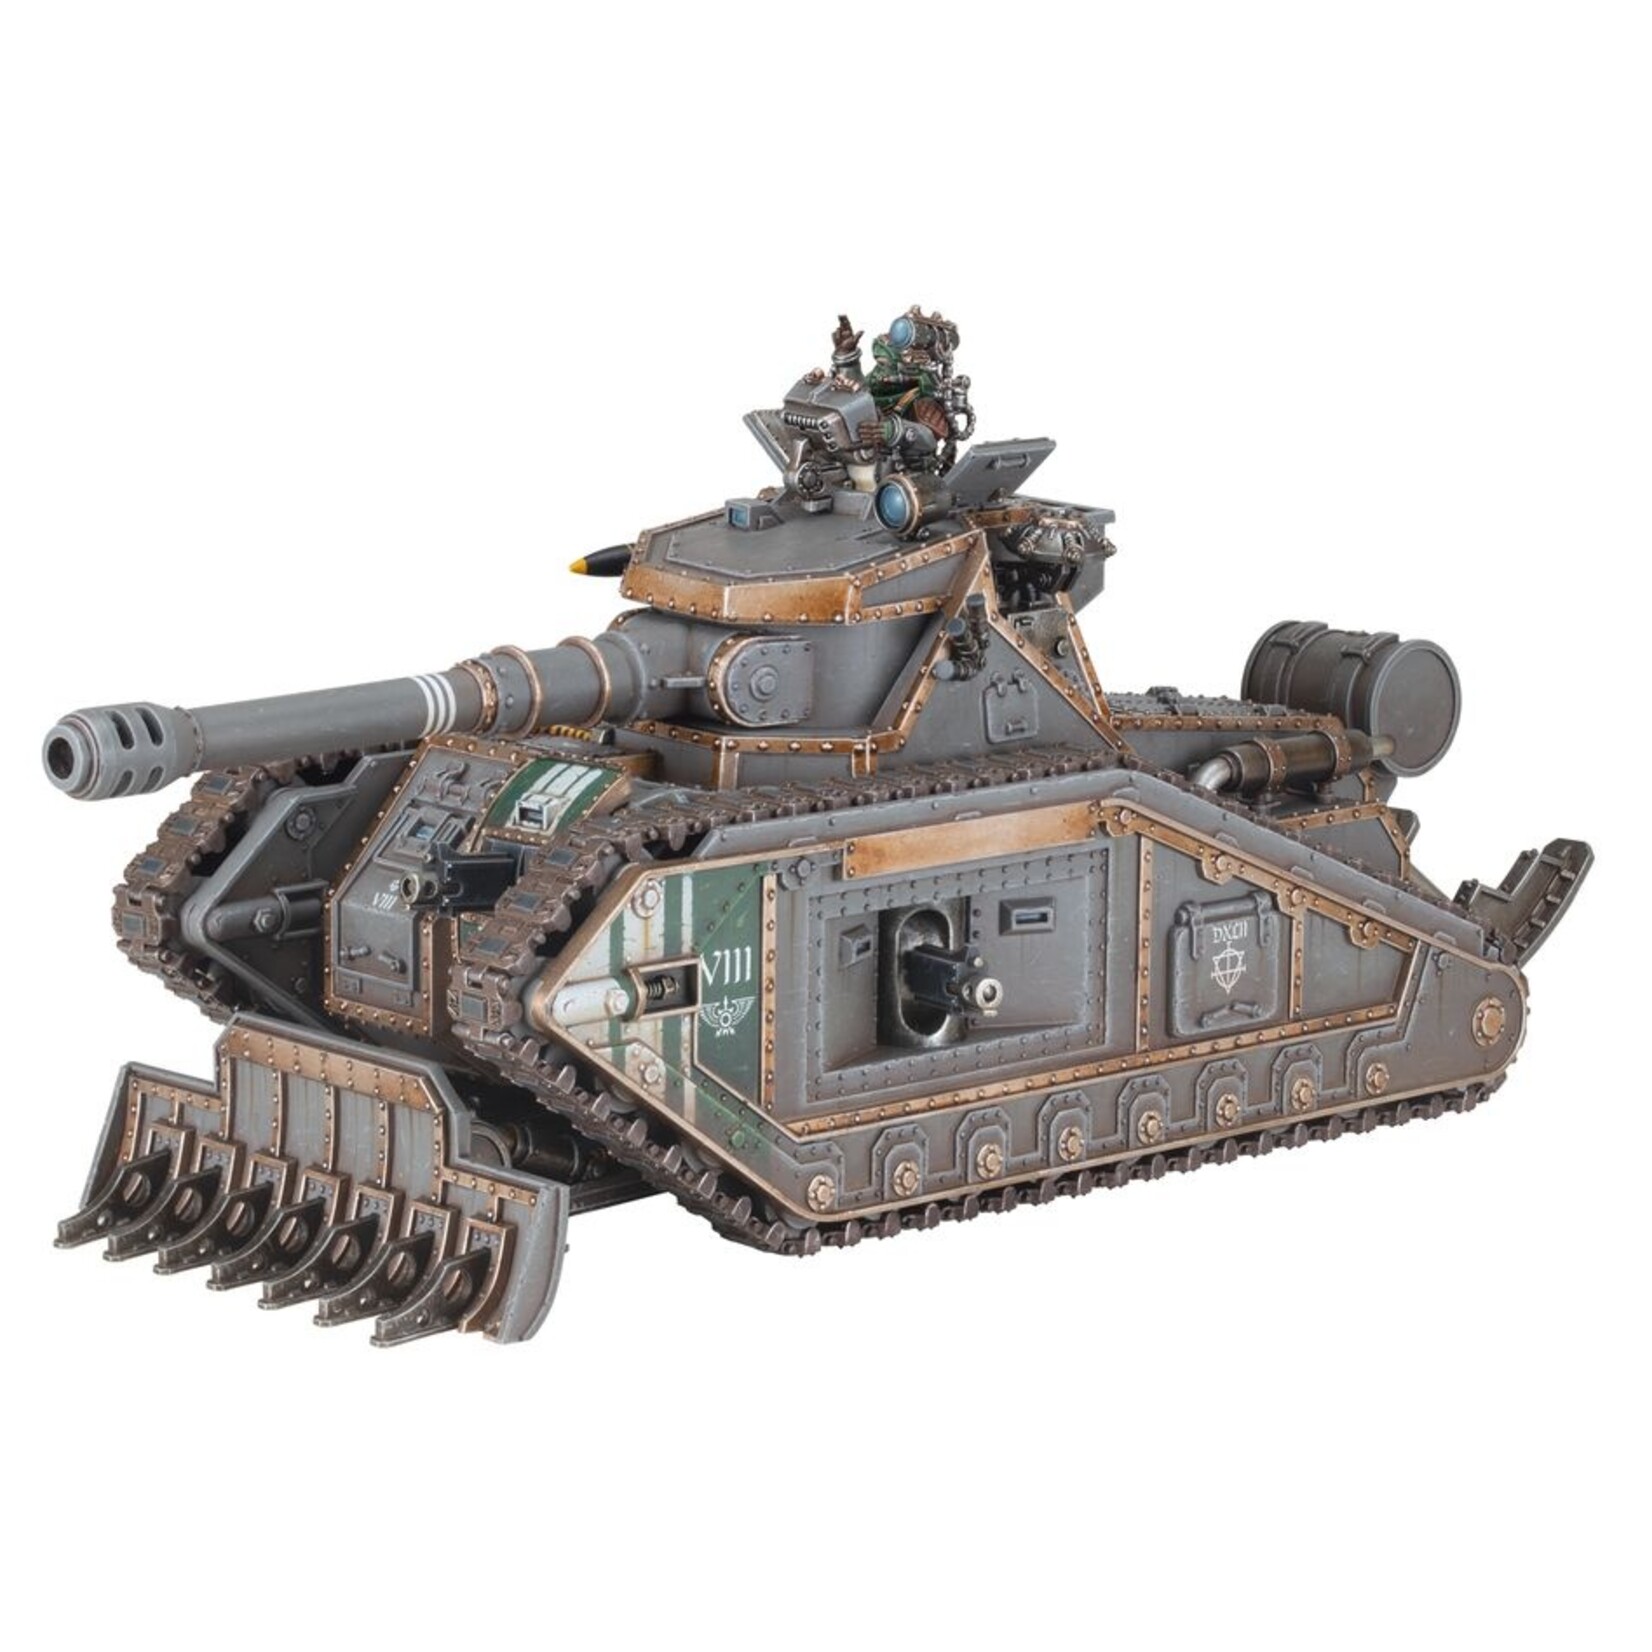 Warhammer: Horus Heresy Solar Auxilia - Malcador Heavy Tank